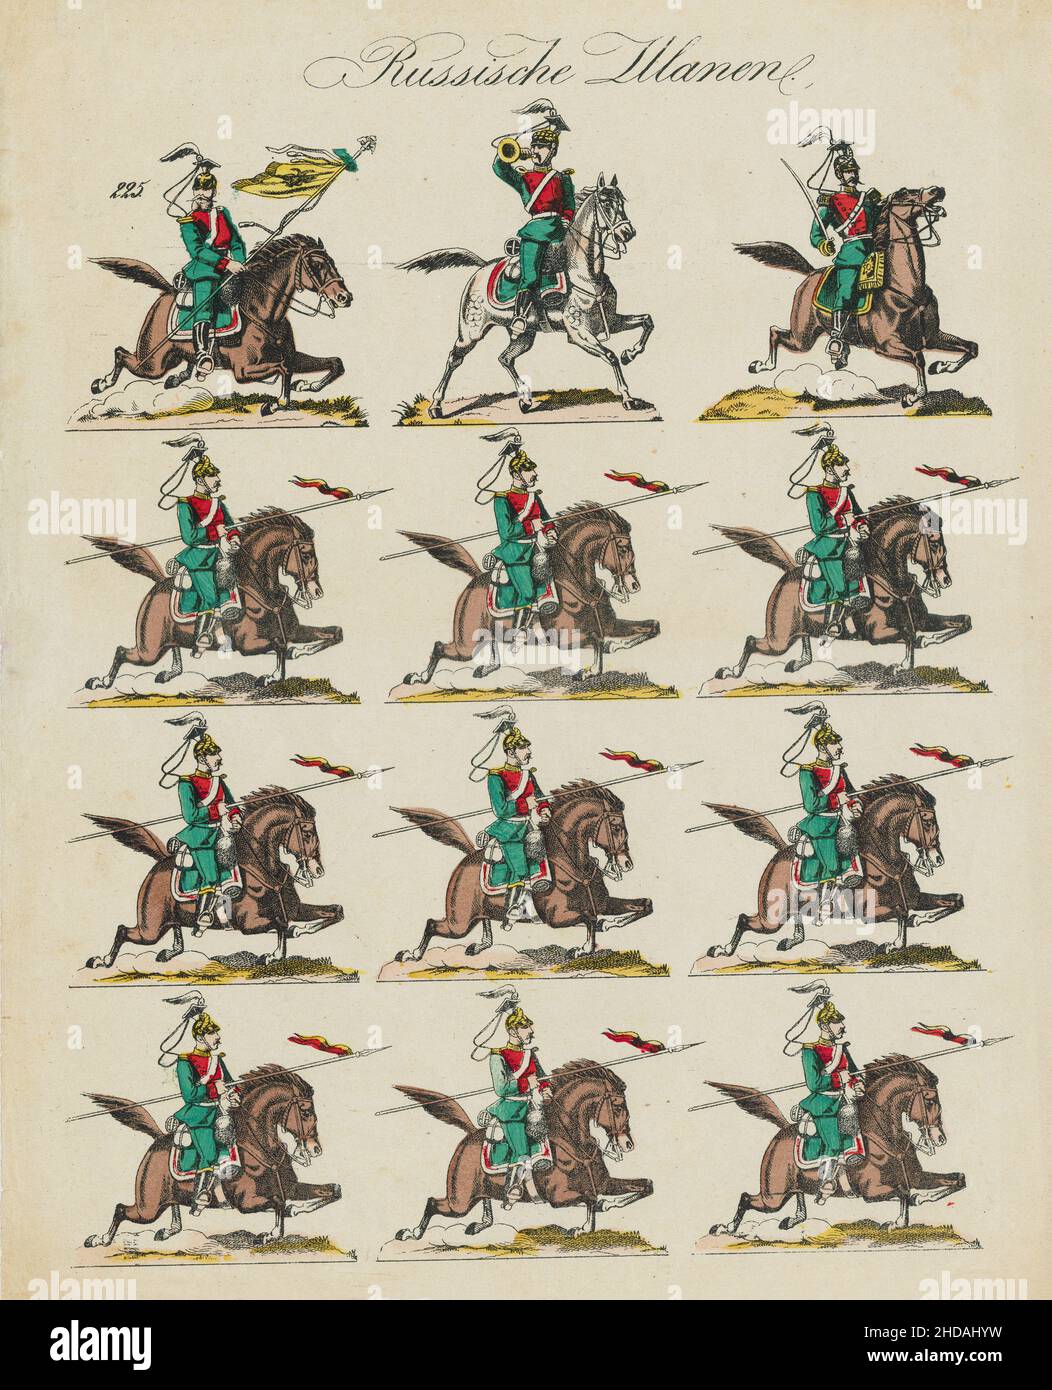 Illustrazioni tedesche d'epoca dell'Esercito Imperiale Russo: uhlans Russo. 1860 Foto Stock